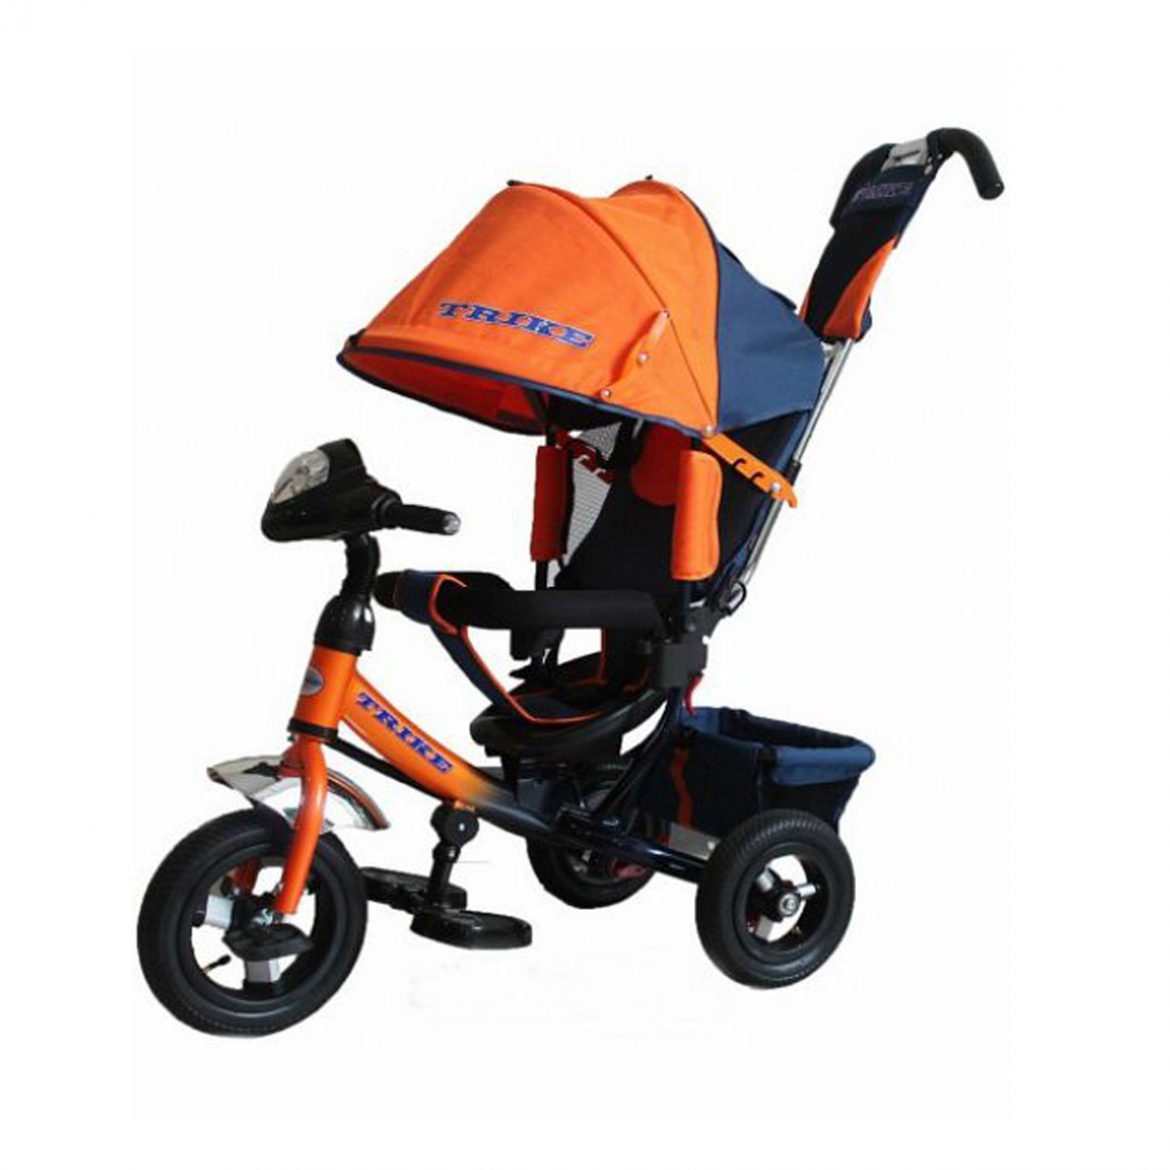 Велосипед трехколесный с ручкой trike. Trike tl3o. Велосипед капелла трехколесный с ручкой оранжевый. Kids Trike велосипед трехколесный оранжевый. Трехколесный велосипед Lexus Trike оранжевый.